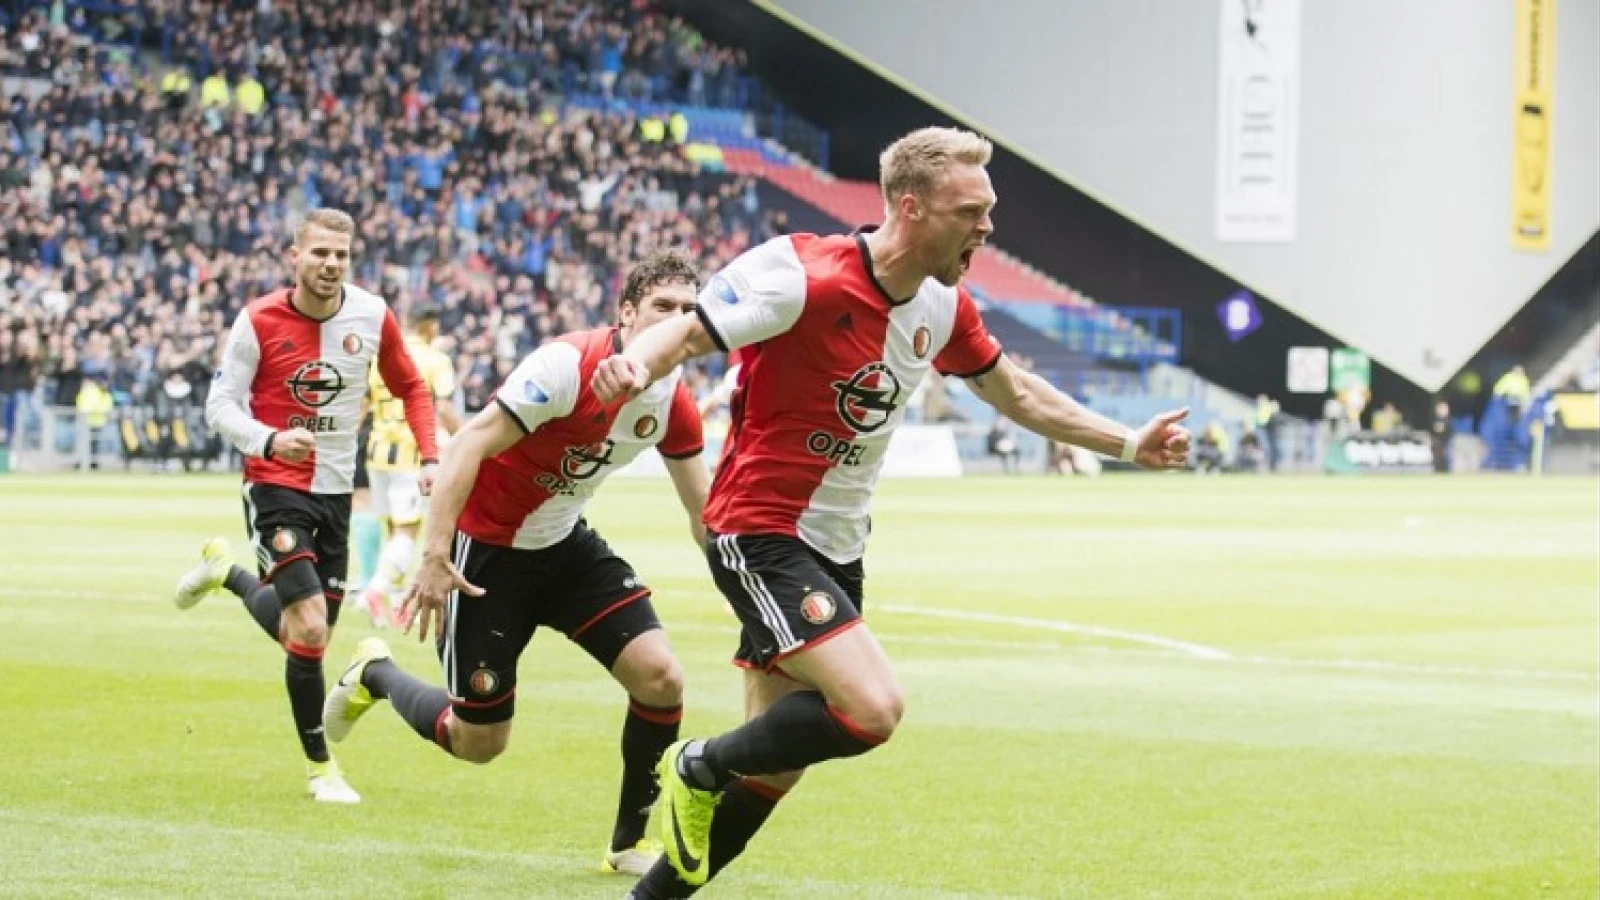 VI nomineert drie Feyenoorders voor 'Speler van de Week'